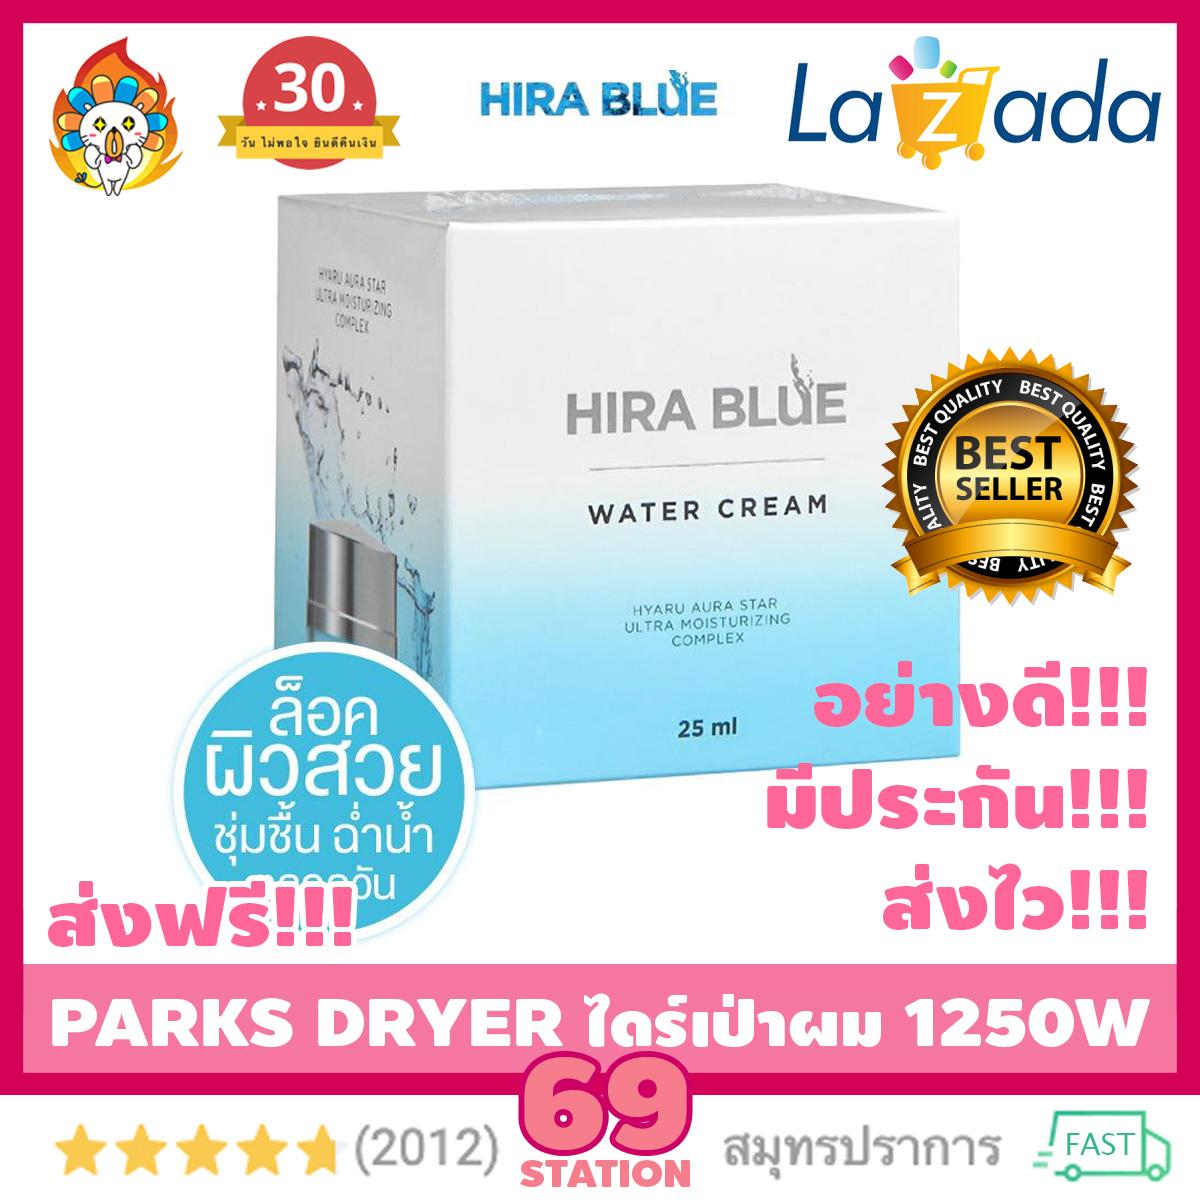 (จัดส่งฟรี ) Hira Blue Water Cream ไฮร่า บลู ครีมลดริ้วรอย ผิวหน้าขาวใสชุ่มชื่น (1กล่อง x ปริมาณ 25 ml.)